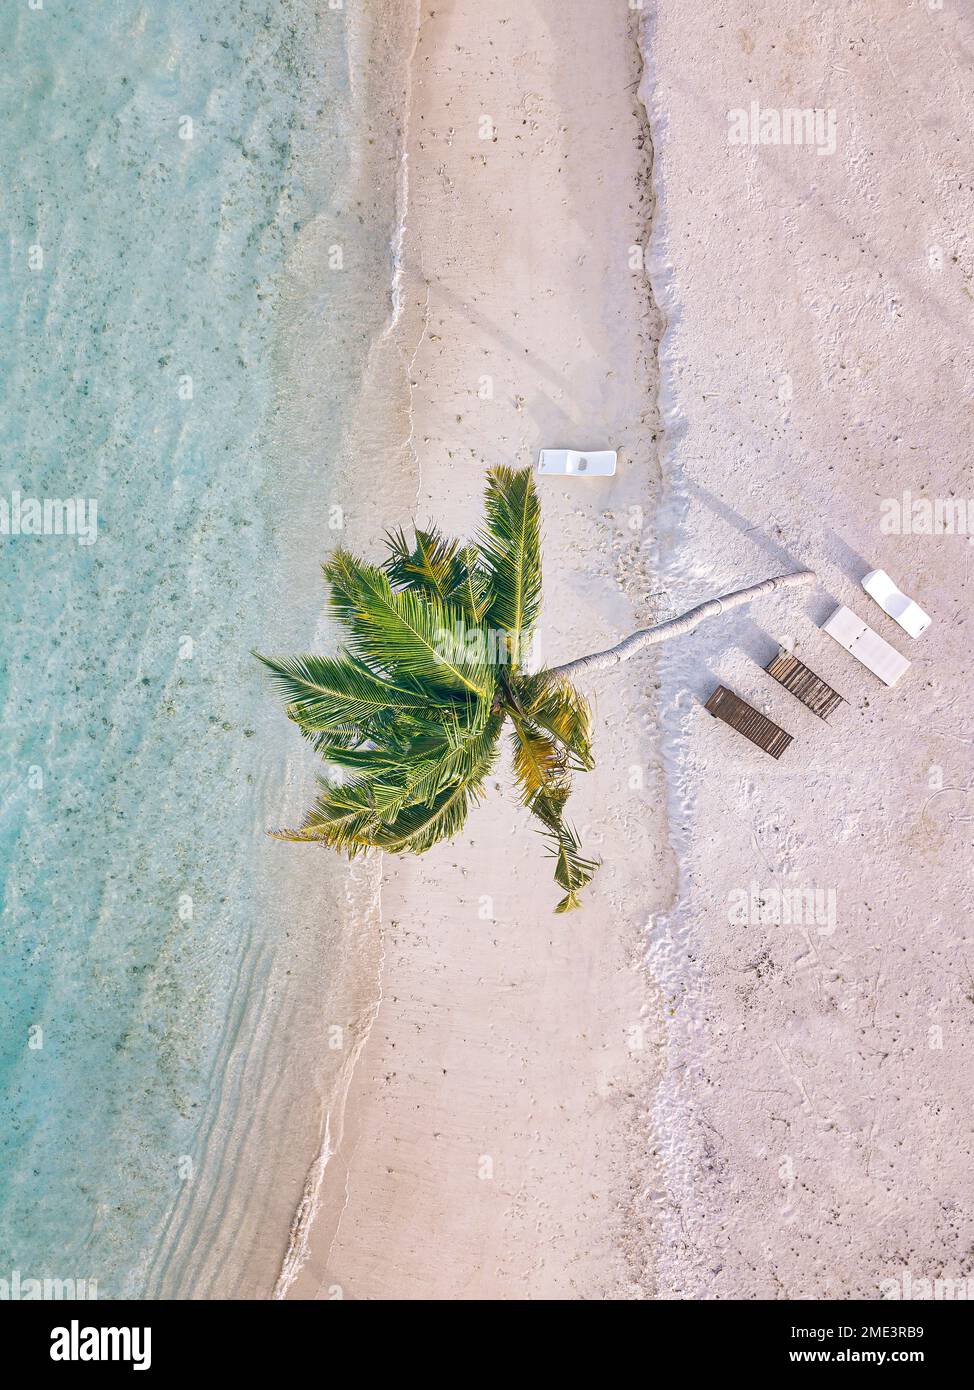 Kokospalme inmitten leerer Liegestühle am Strand Stockfoto